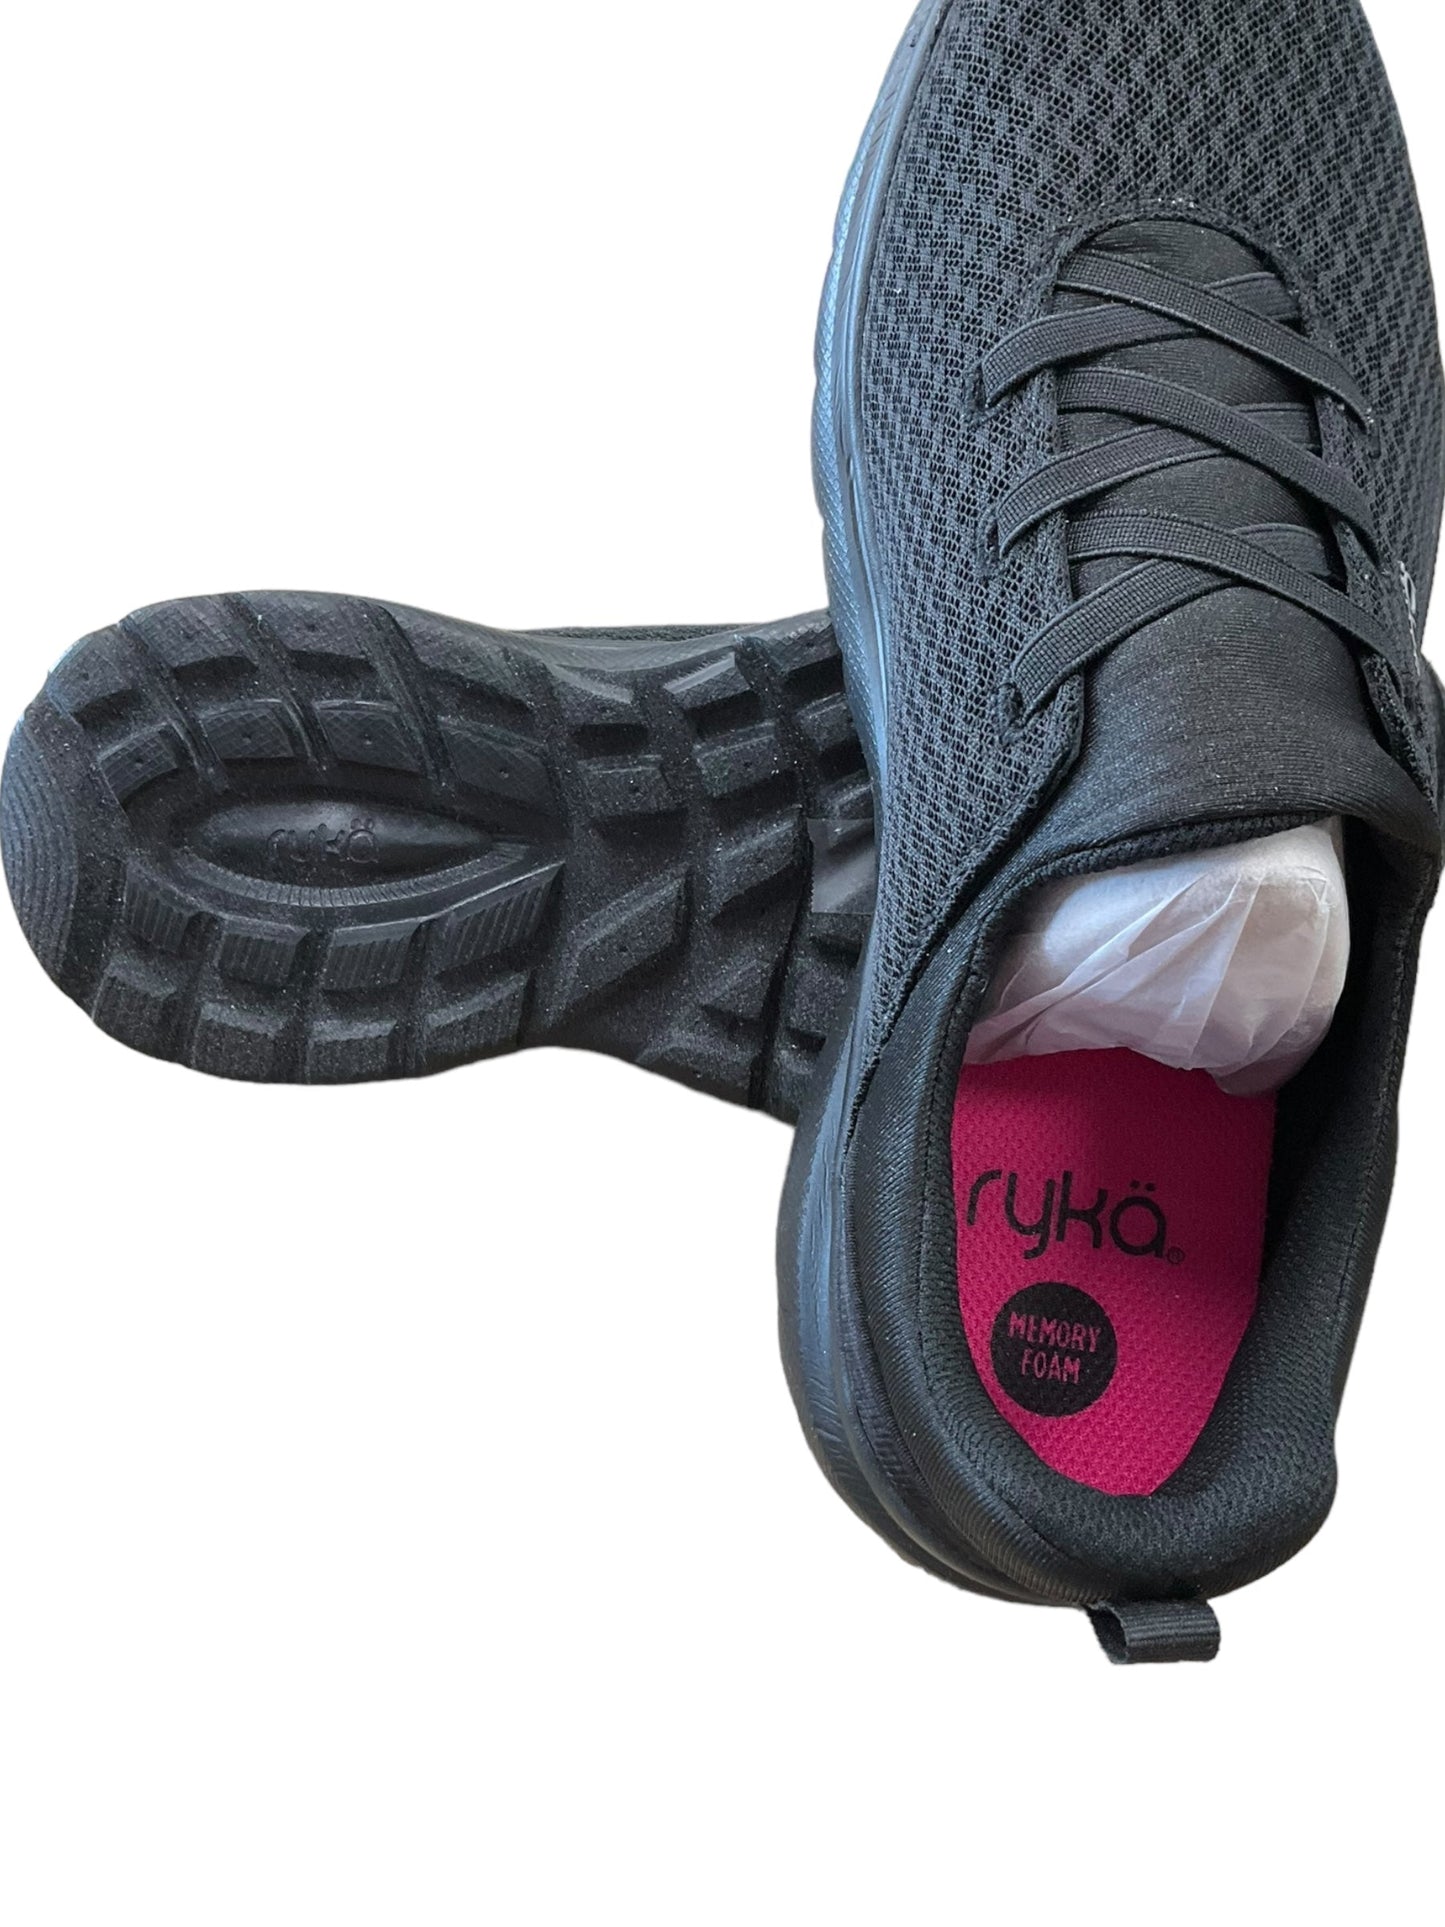 Black Shoes Athletic Ryka, Size 10